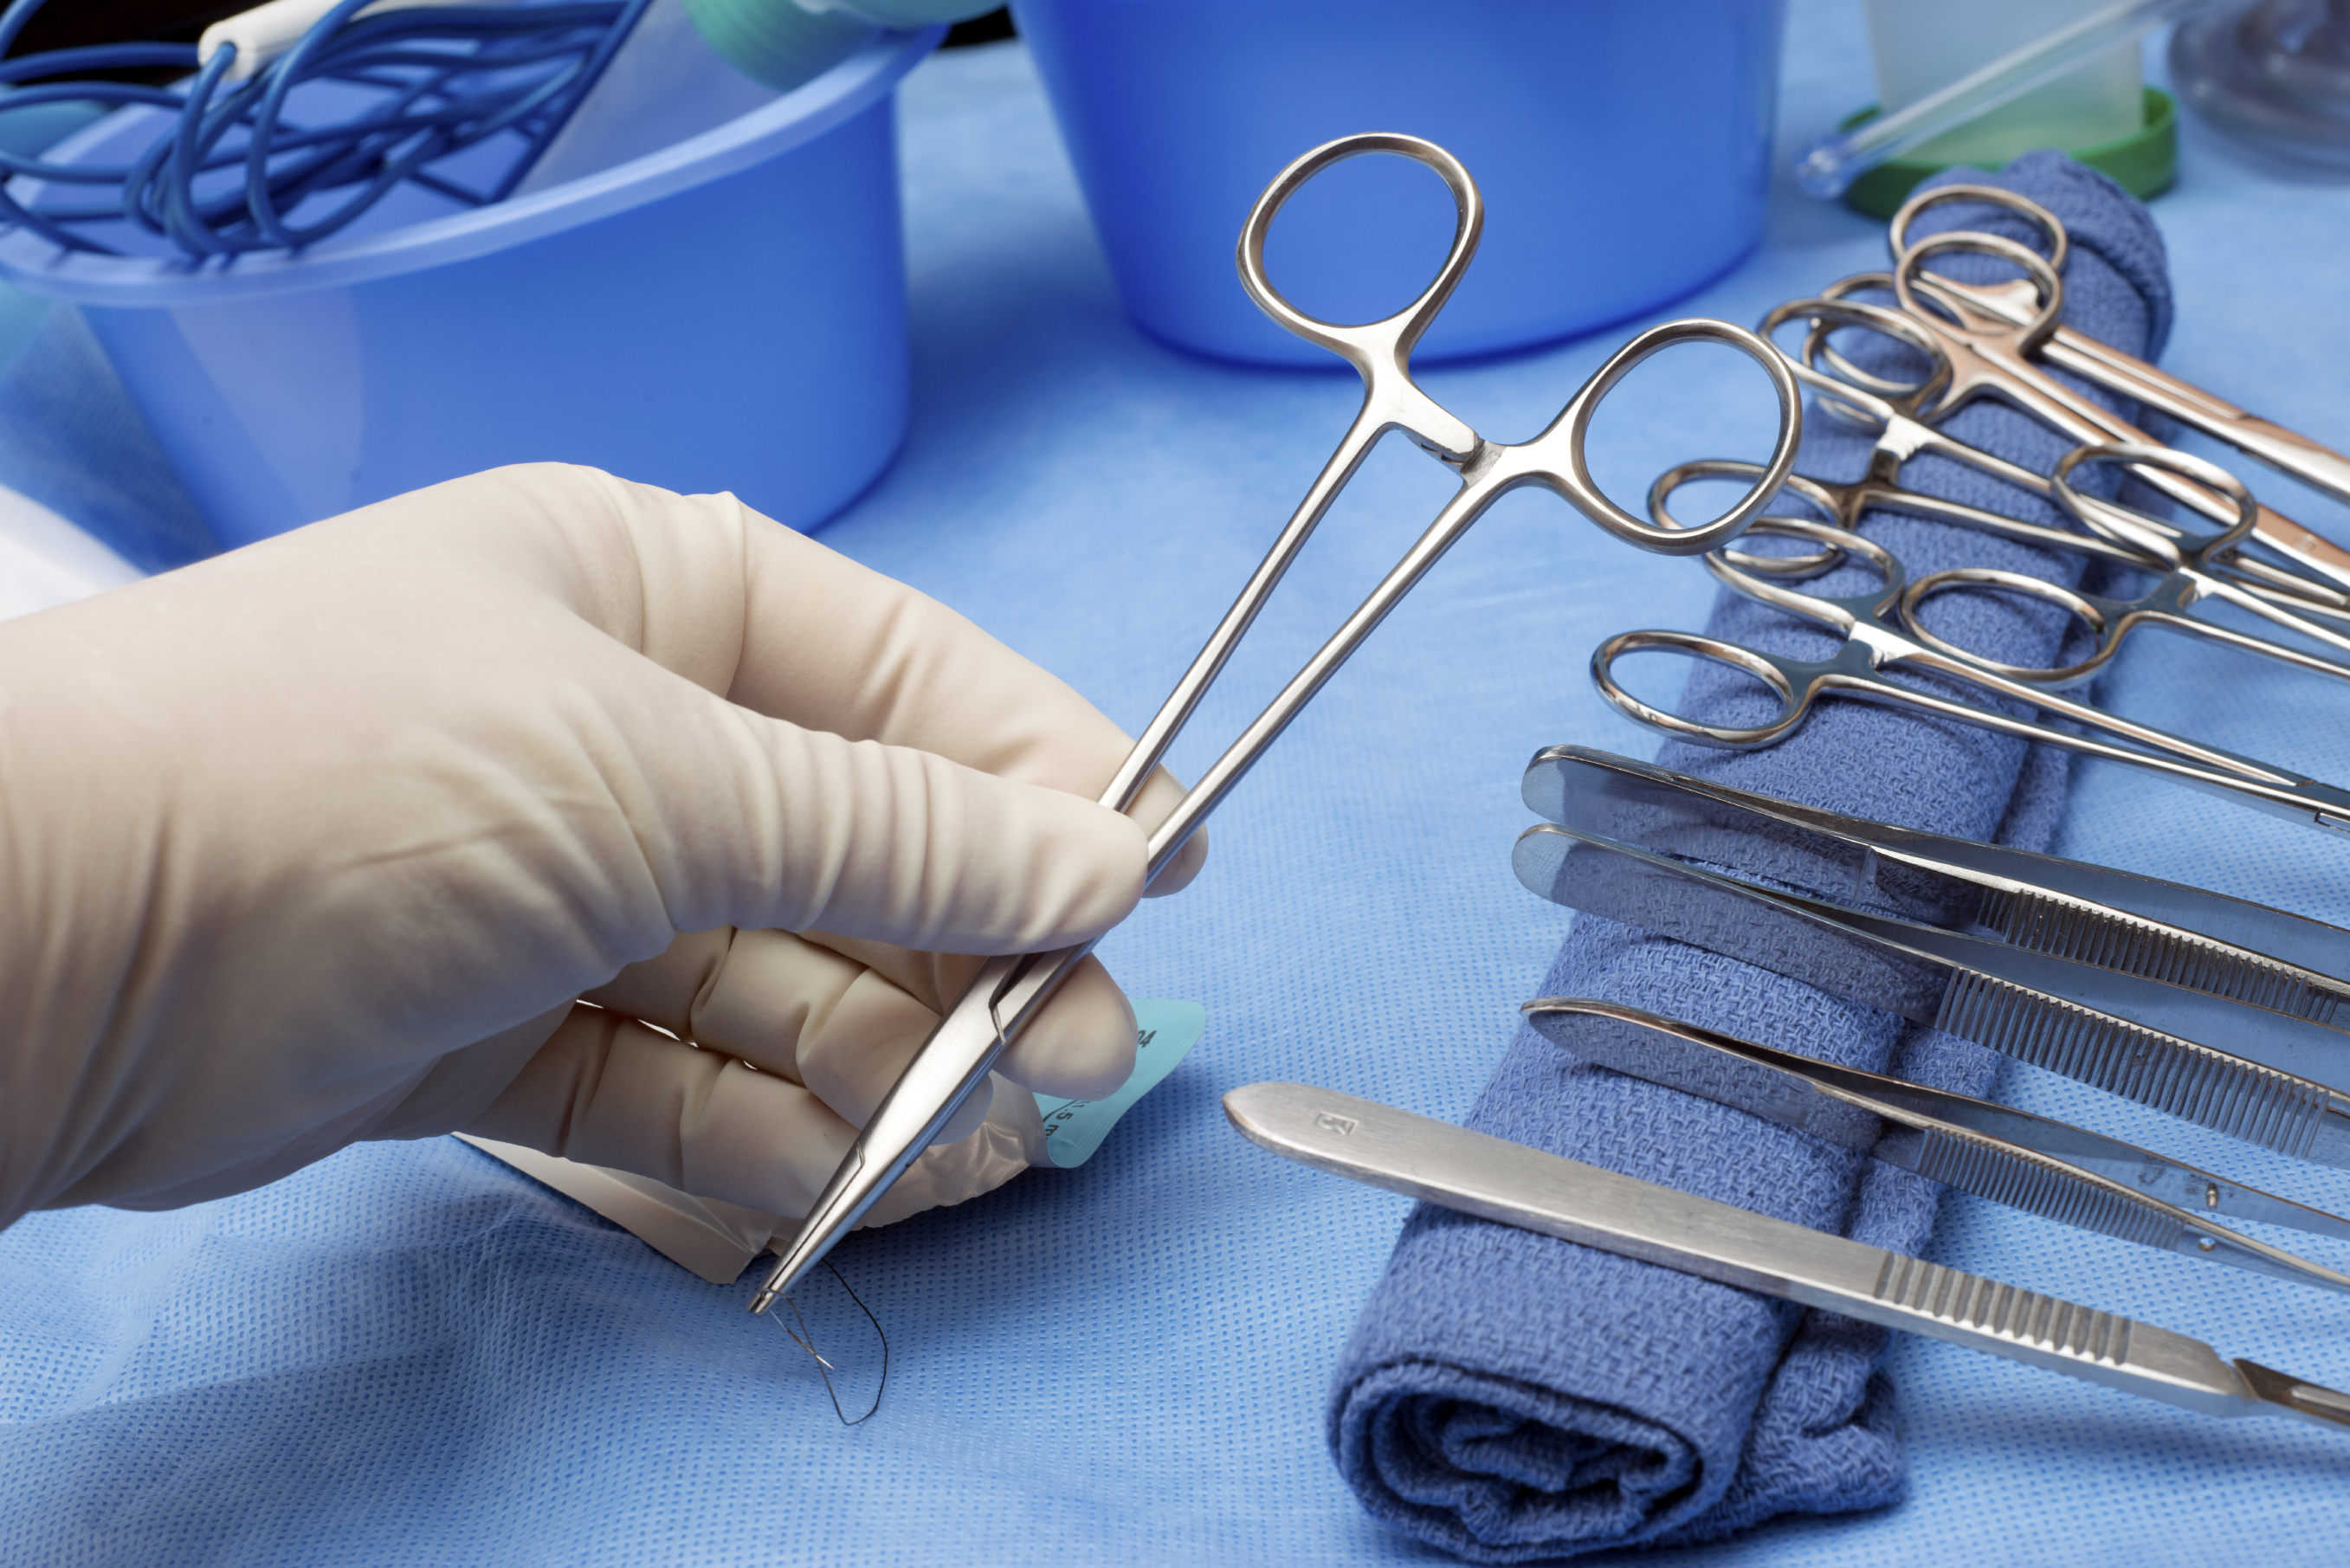 Правила подачи хирургического инструмента со стерильного стола